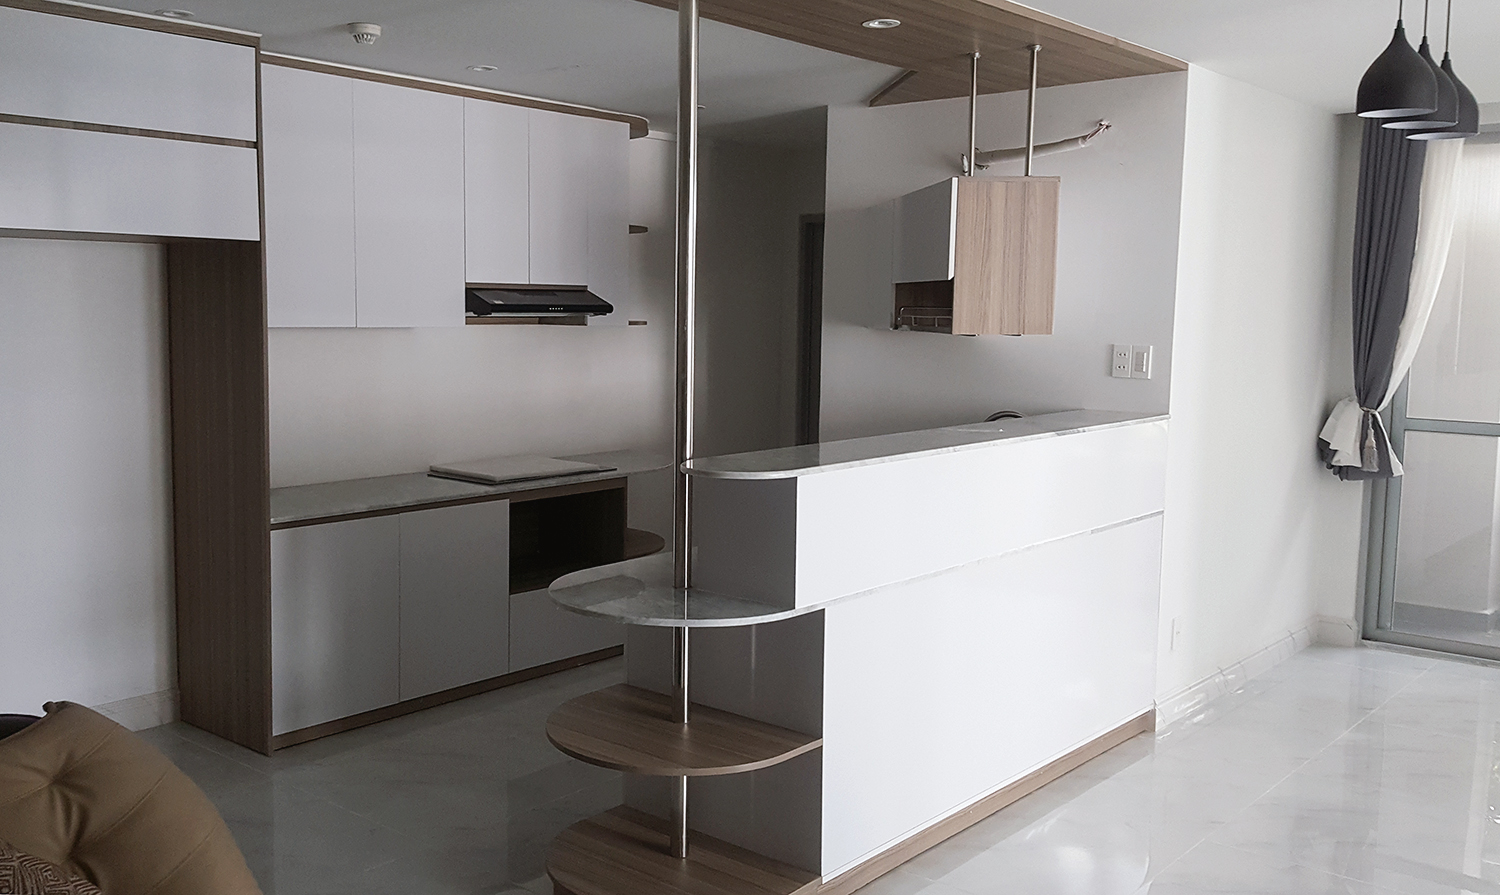 Phòng bếp, phong cách Hiện đại Modern, hoàn thiện nội thất, căn hộ Phú Mỹ Hưng